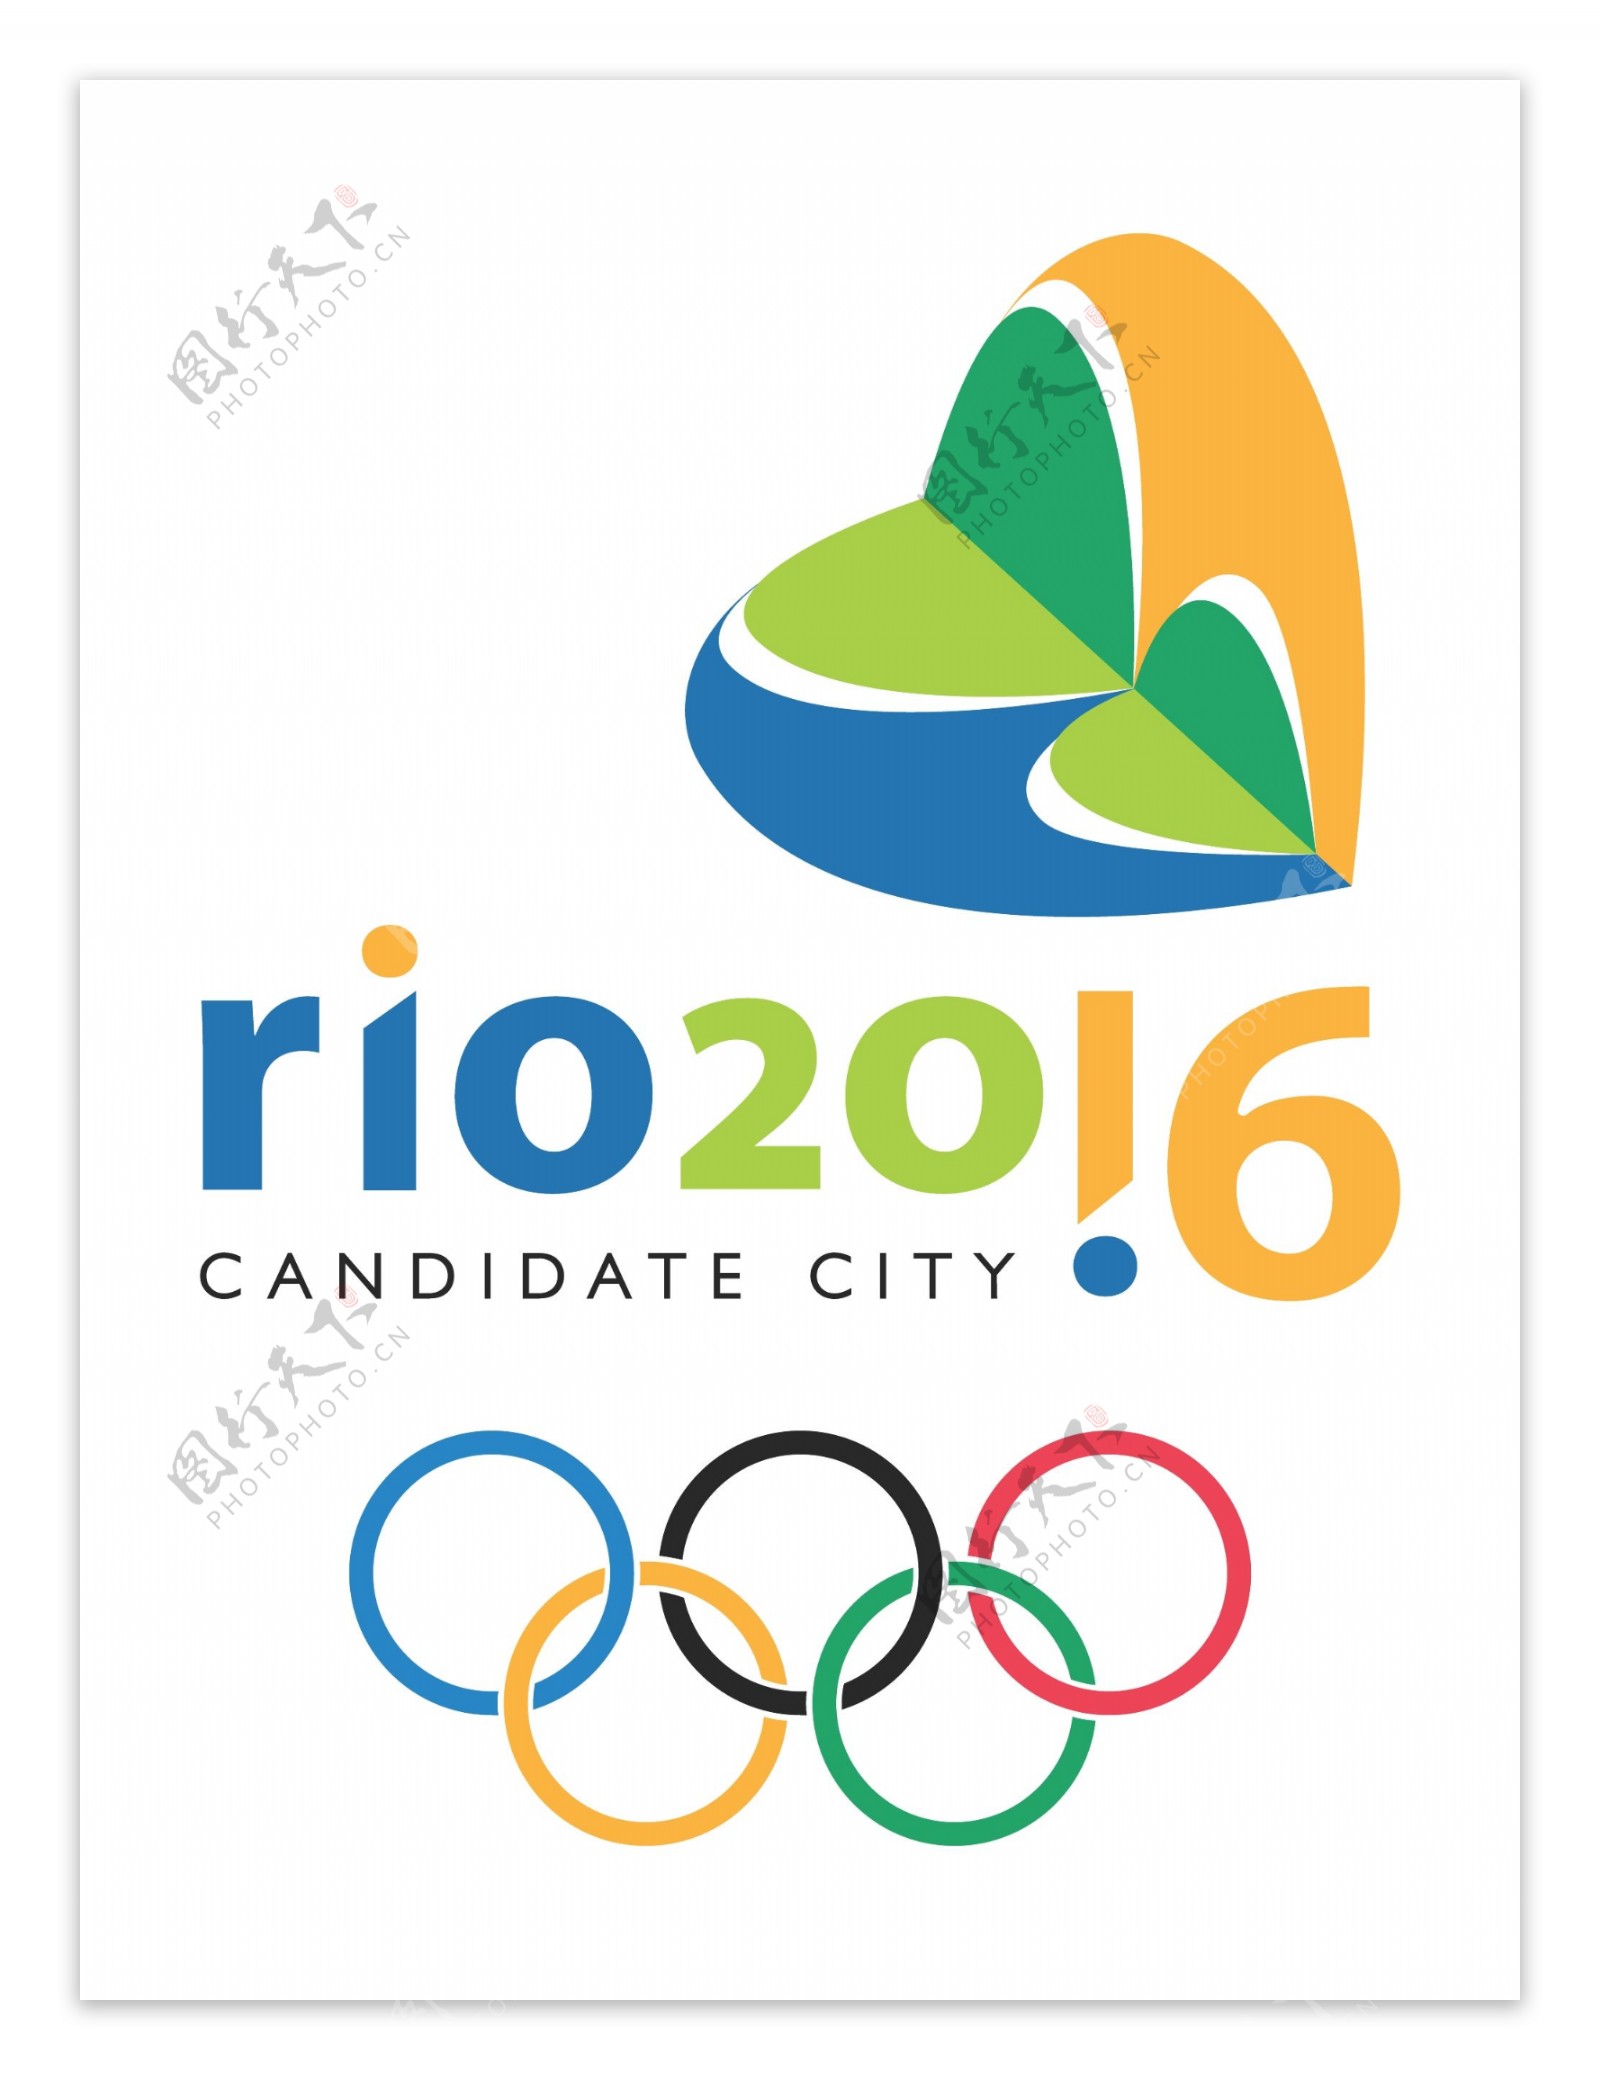 里约热内卢2016奥运会标志